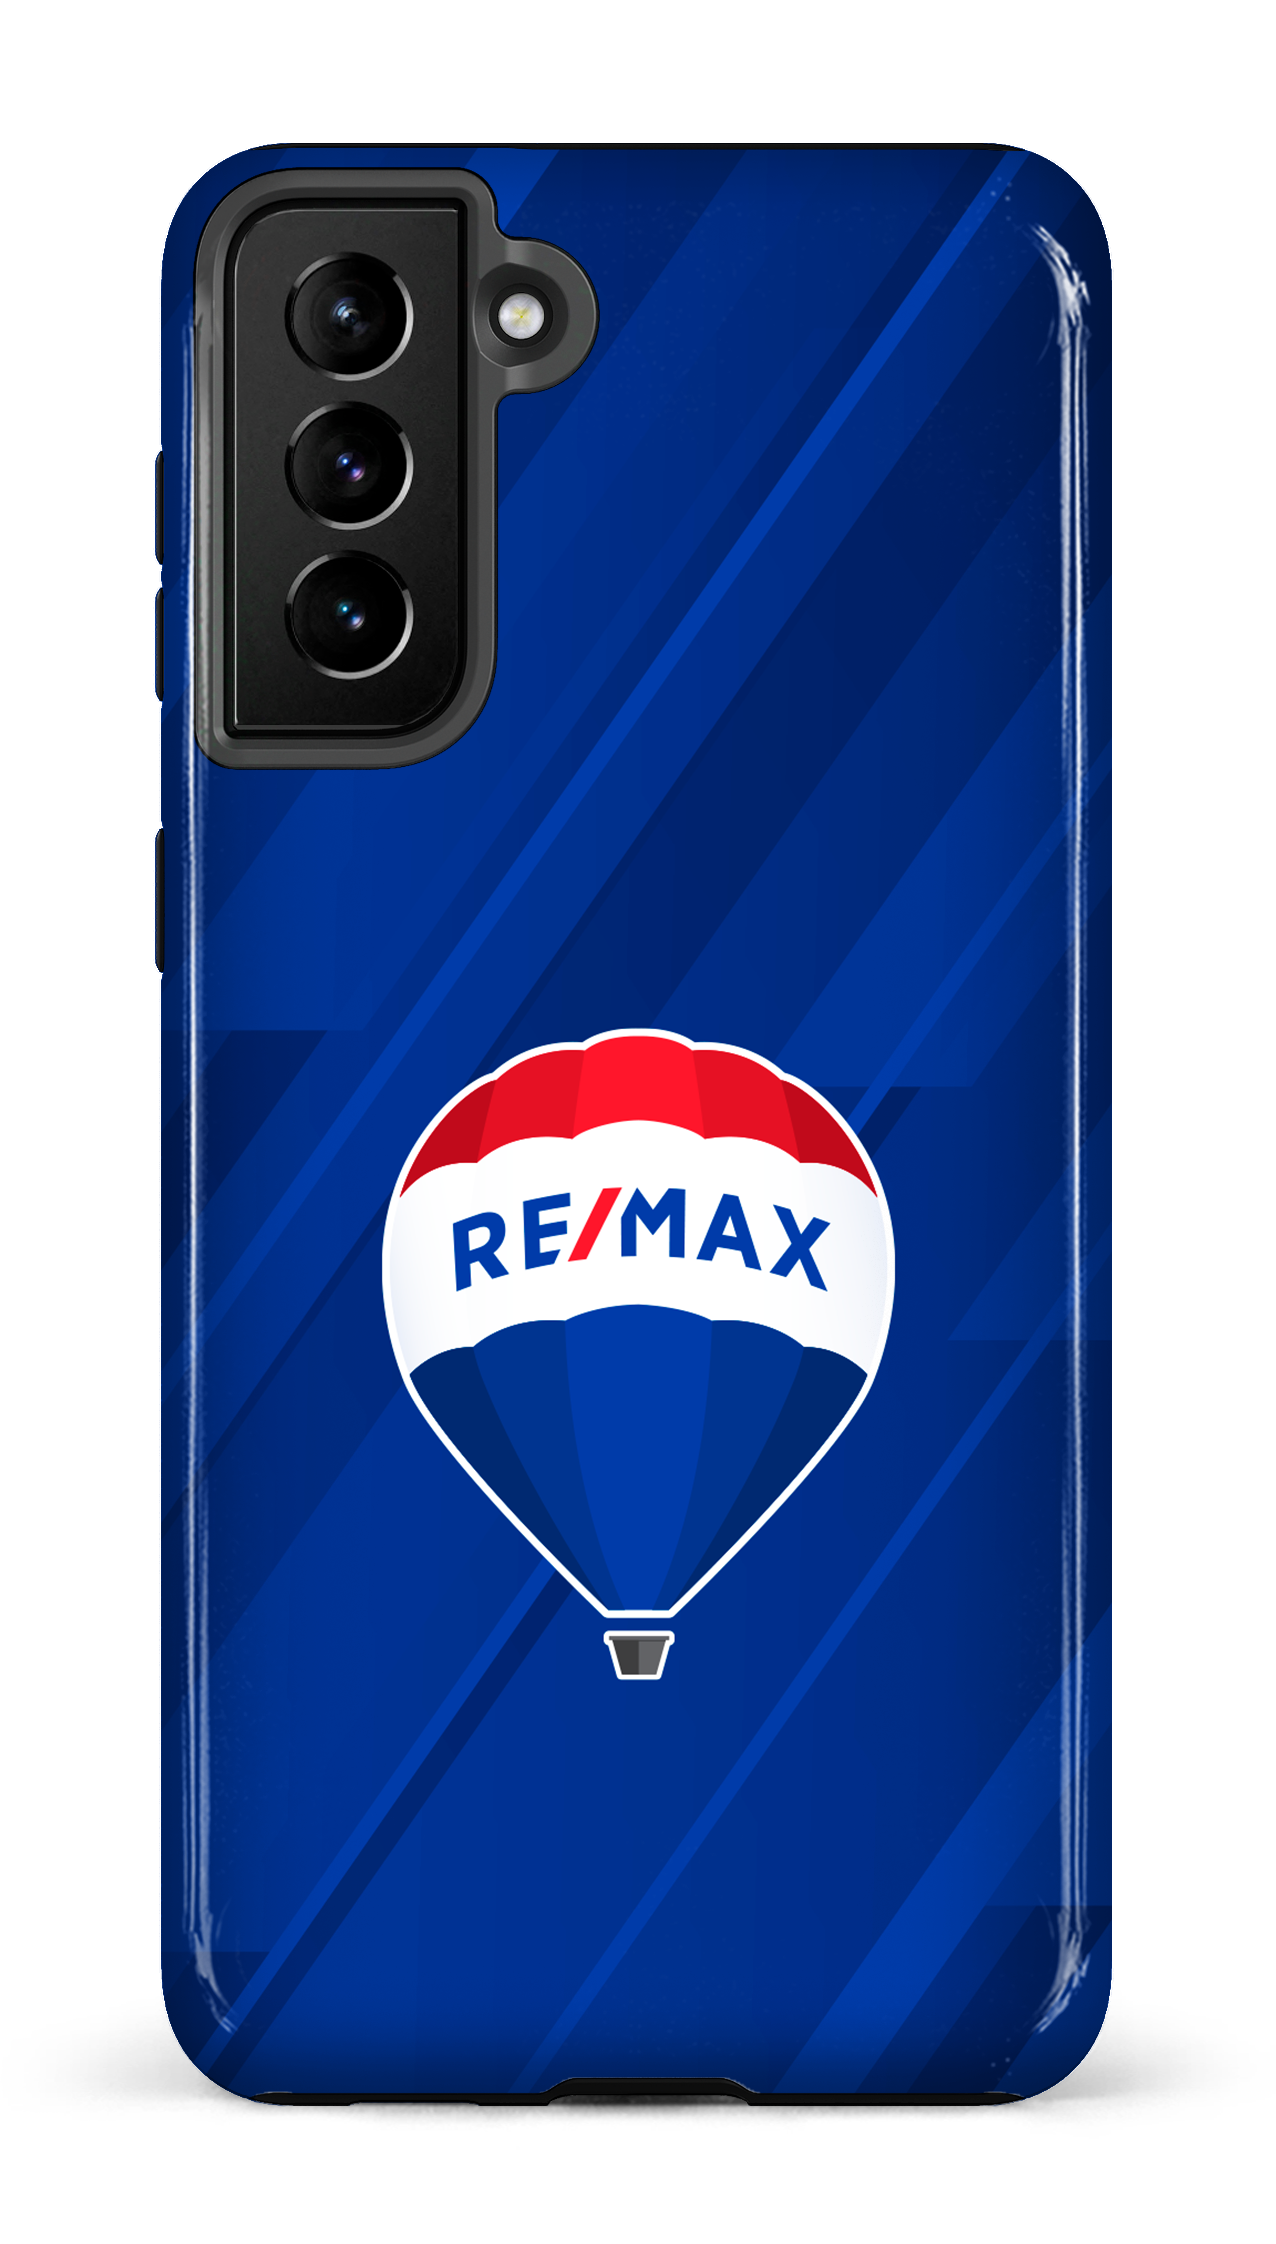 Remax Bleu - Galaxy S21 Plus